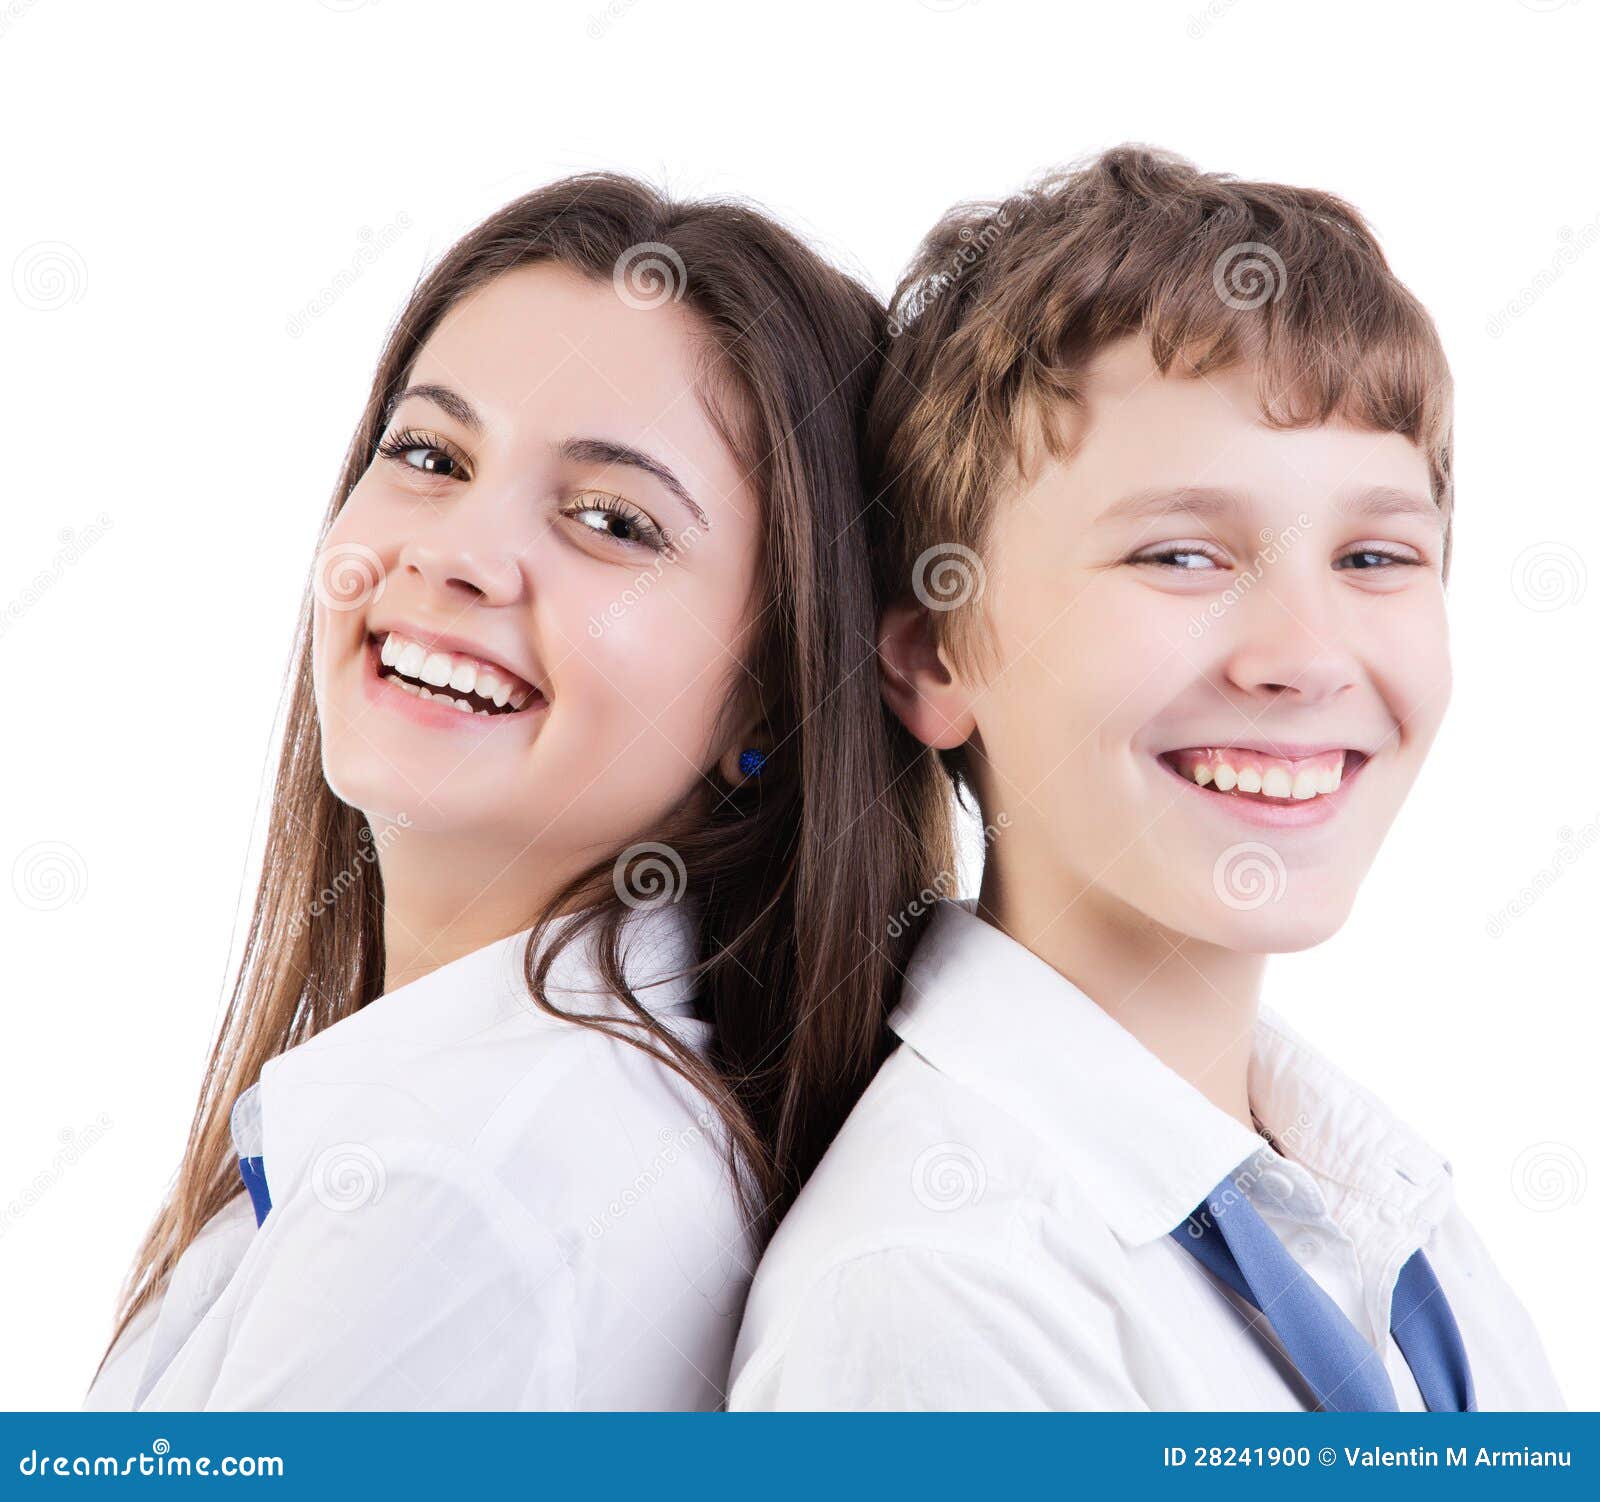 Are teenagers happy. Счастливые подростки 14 лет на белом фоне. Счастливая с подростками фото красивые на прозрачном фоне. Счастливая подростковая парамедицина. Счастливый подросток девочка с врачом мужчиной.